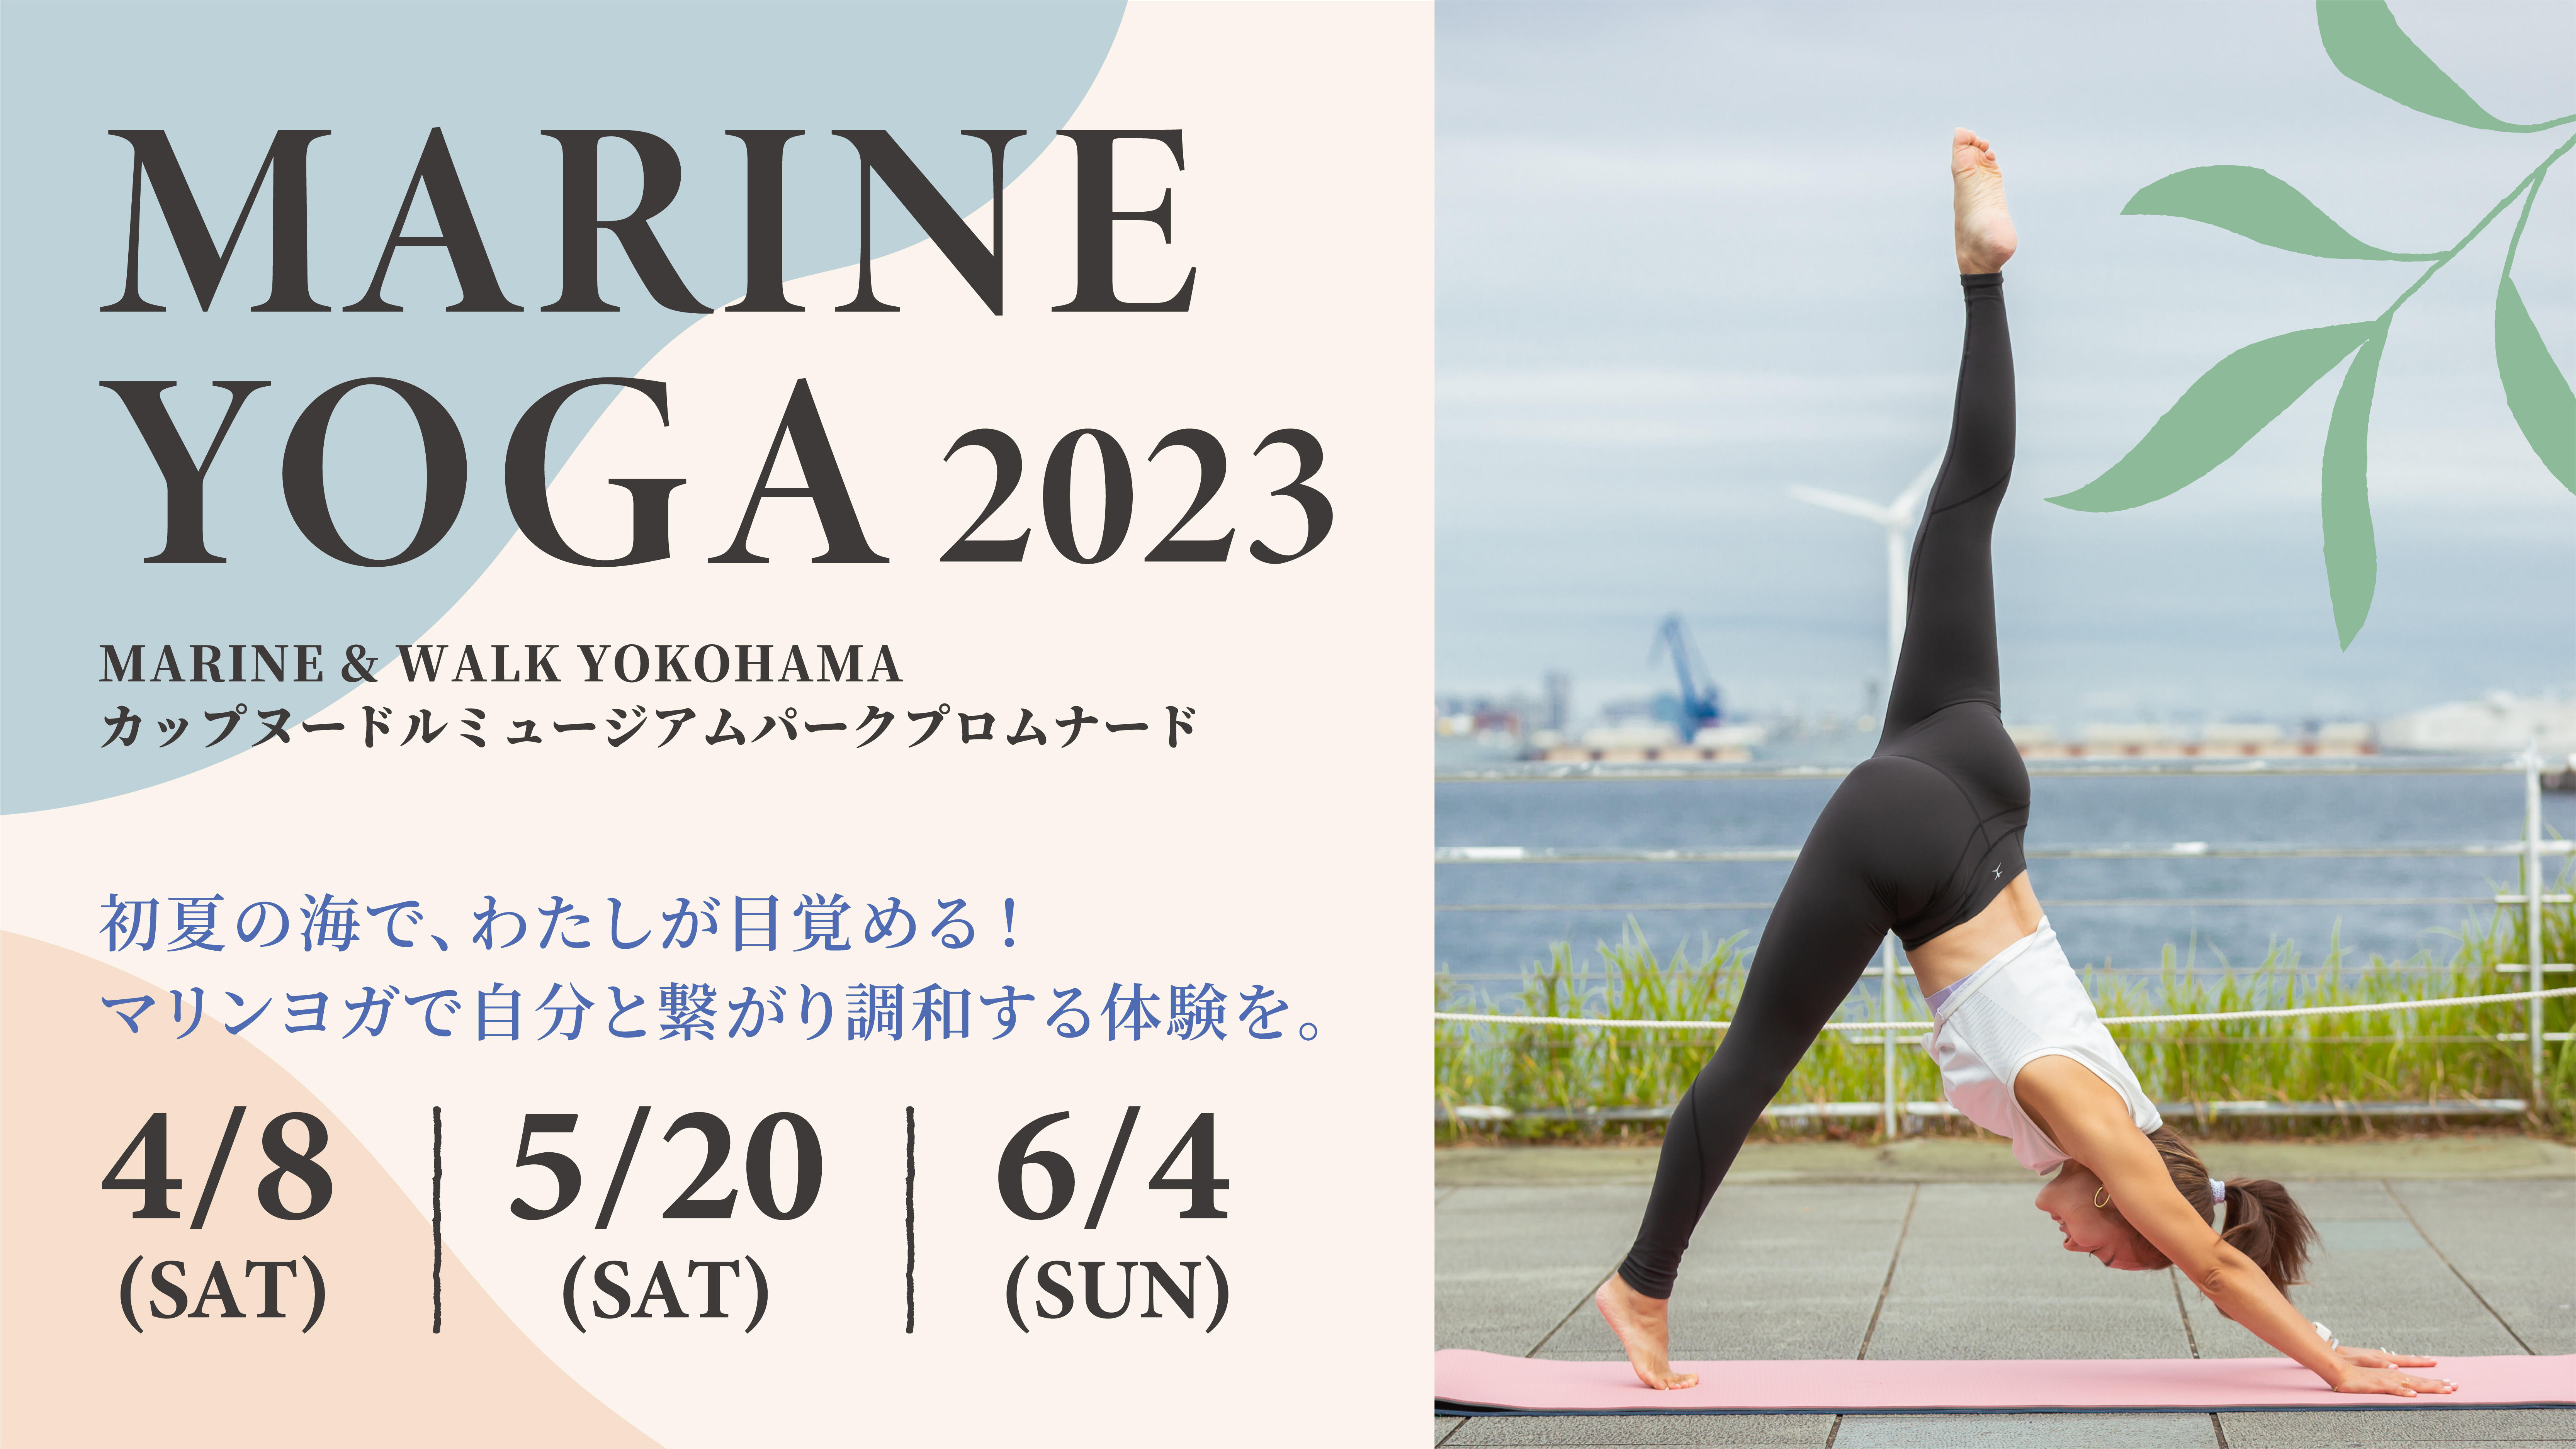 MARINE YOGA 2023 4.8(sat) / 5.20(sat) /6.4(sun)